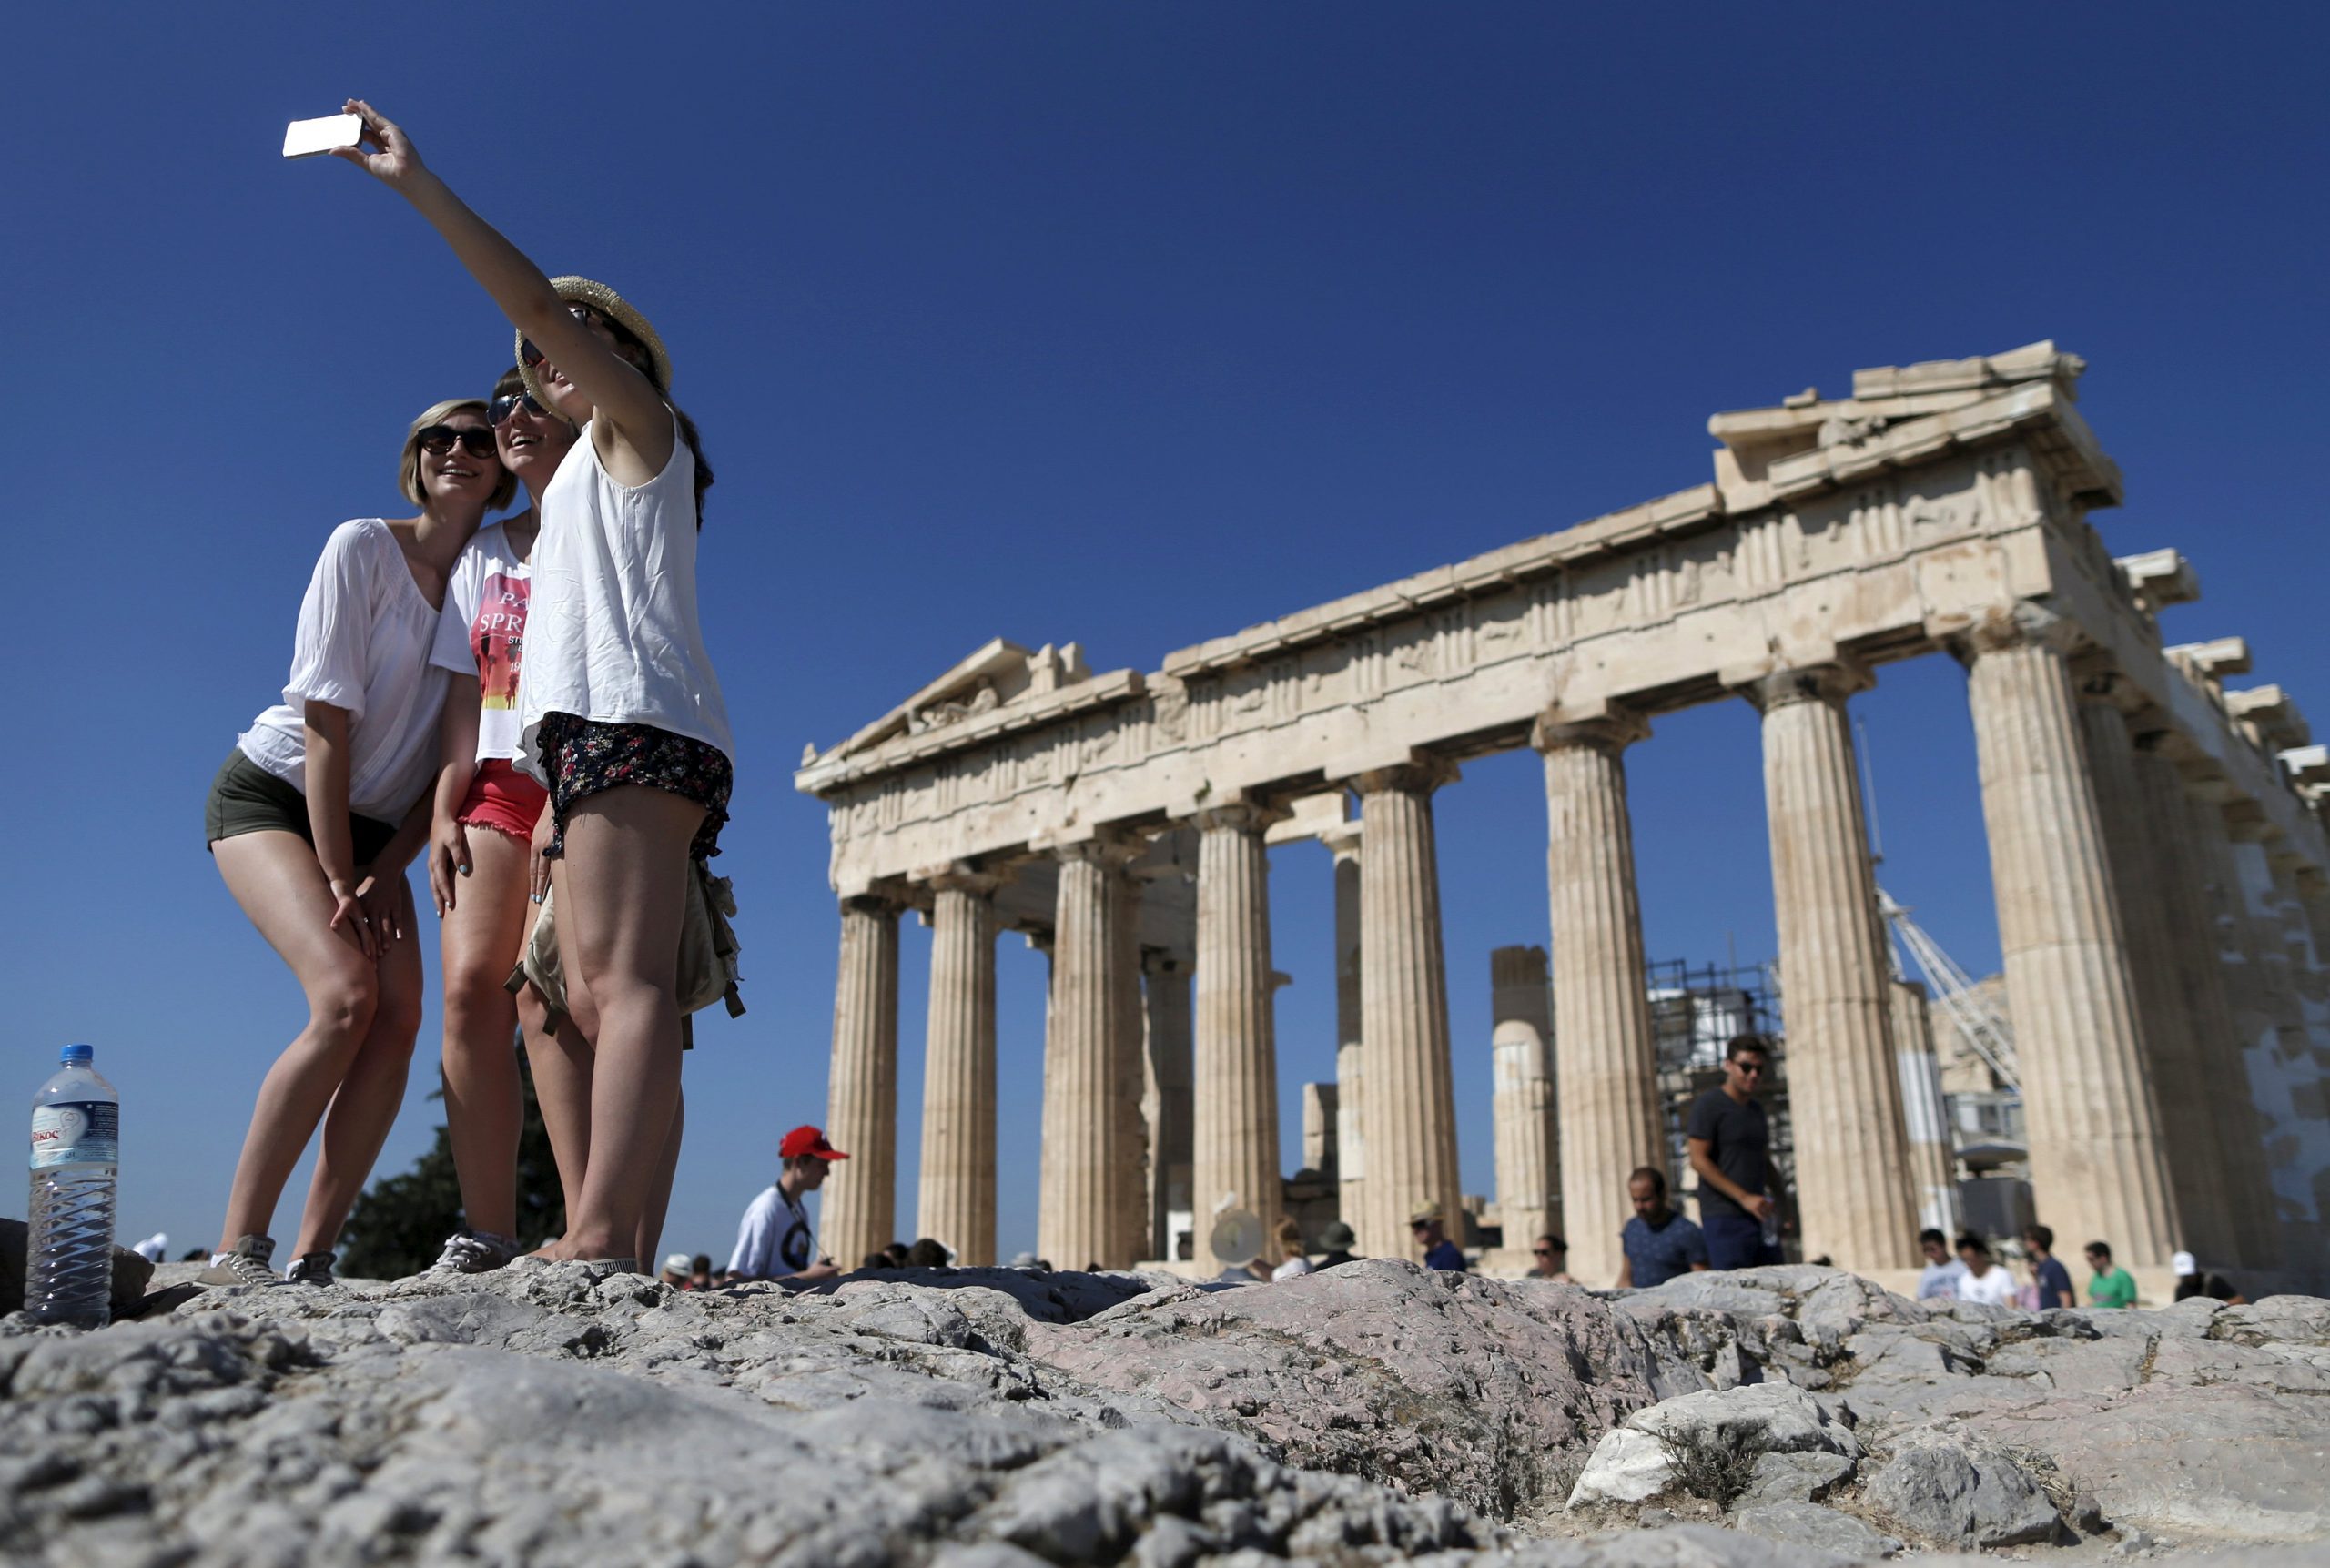 ΕΞΑΑΑ: Δεν υπάρχει «over booking» στην Αθήνα